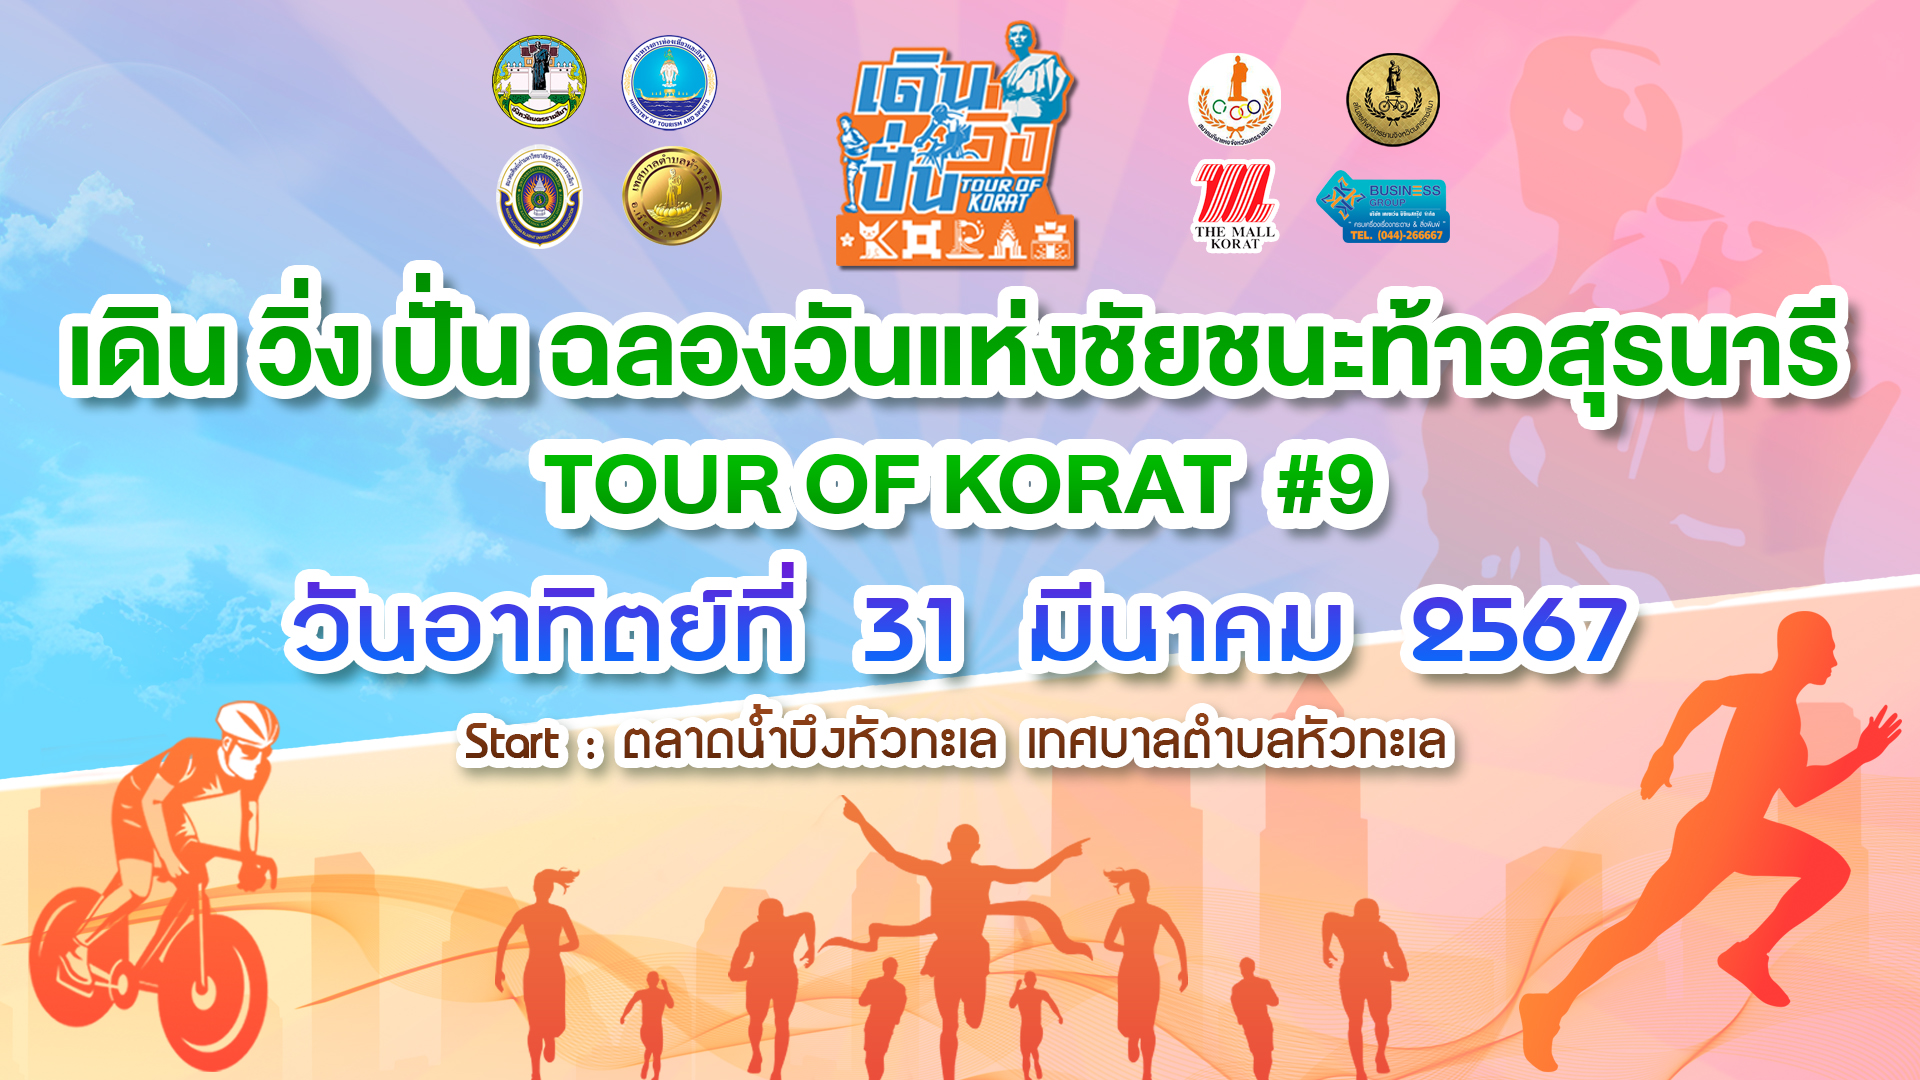 เดิน วิ่ง ปั่น ฉลองชัยชนะท้าวสุรนารี 2567 TOUR OF KORAT #9